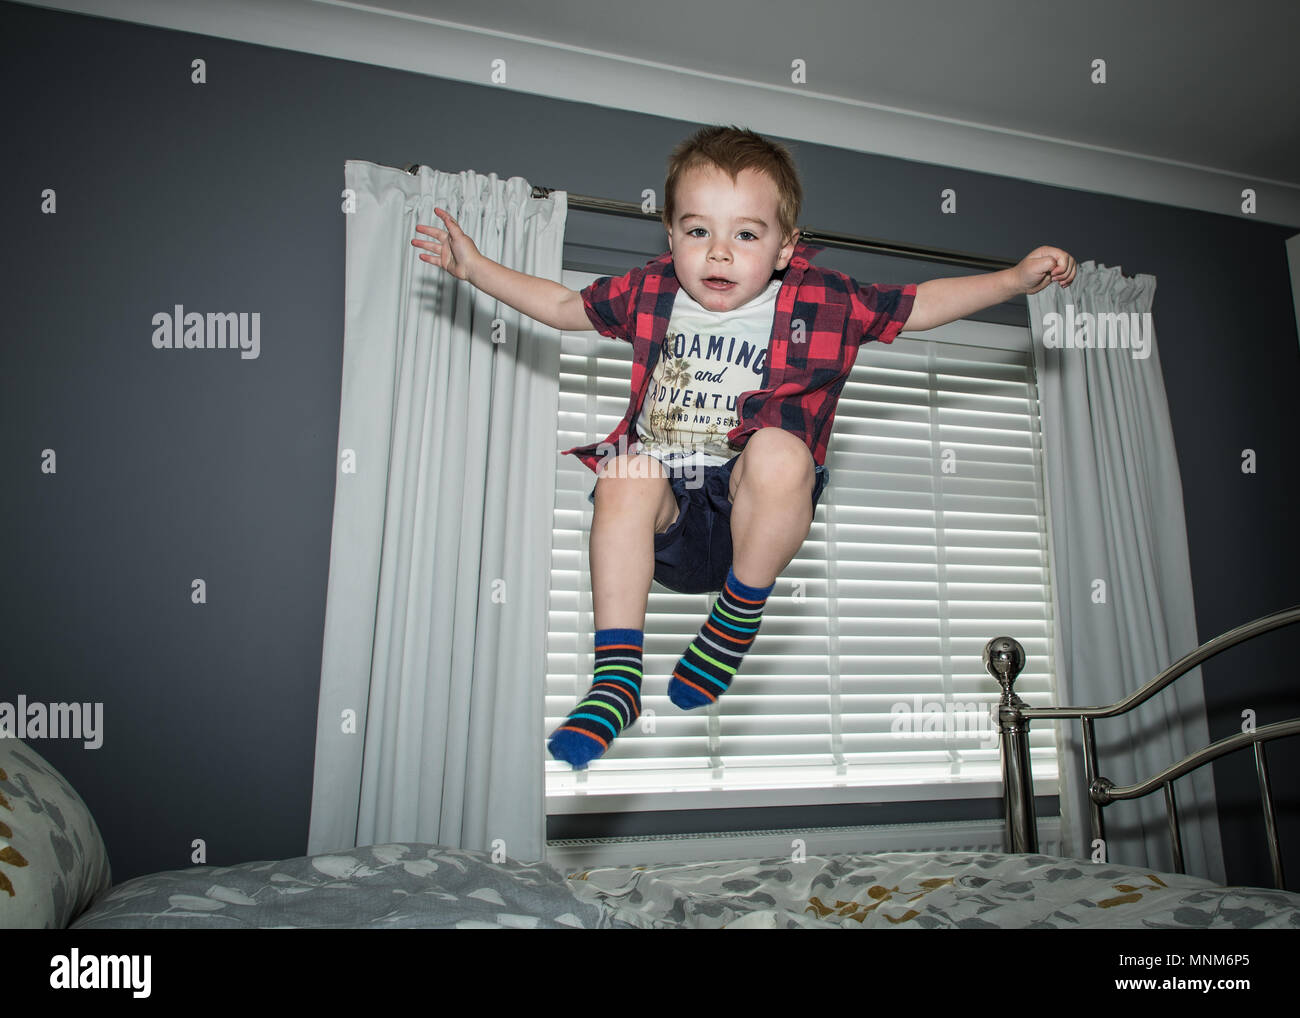 Un ragazzino salta su un letto in una camera da letto / Bambino saltando sul letto Foto Stock